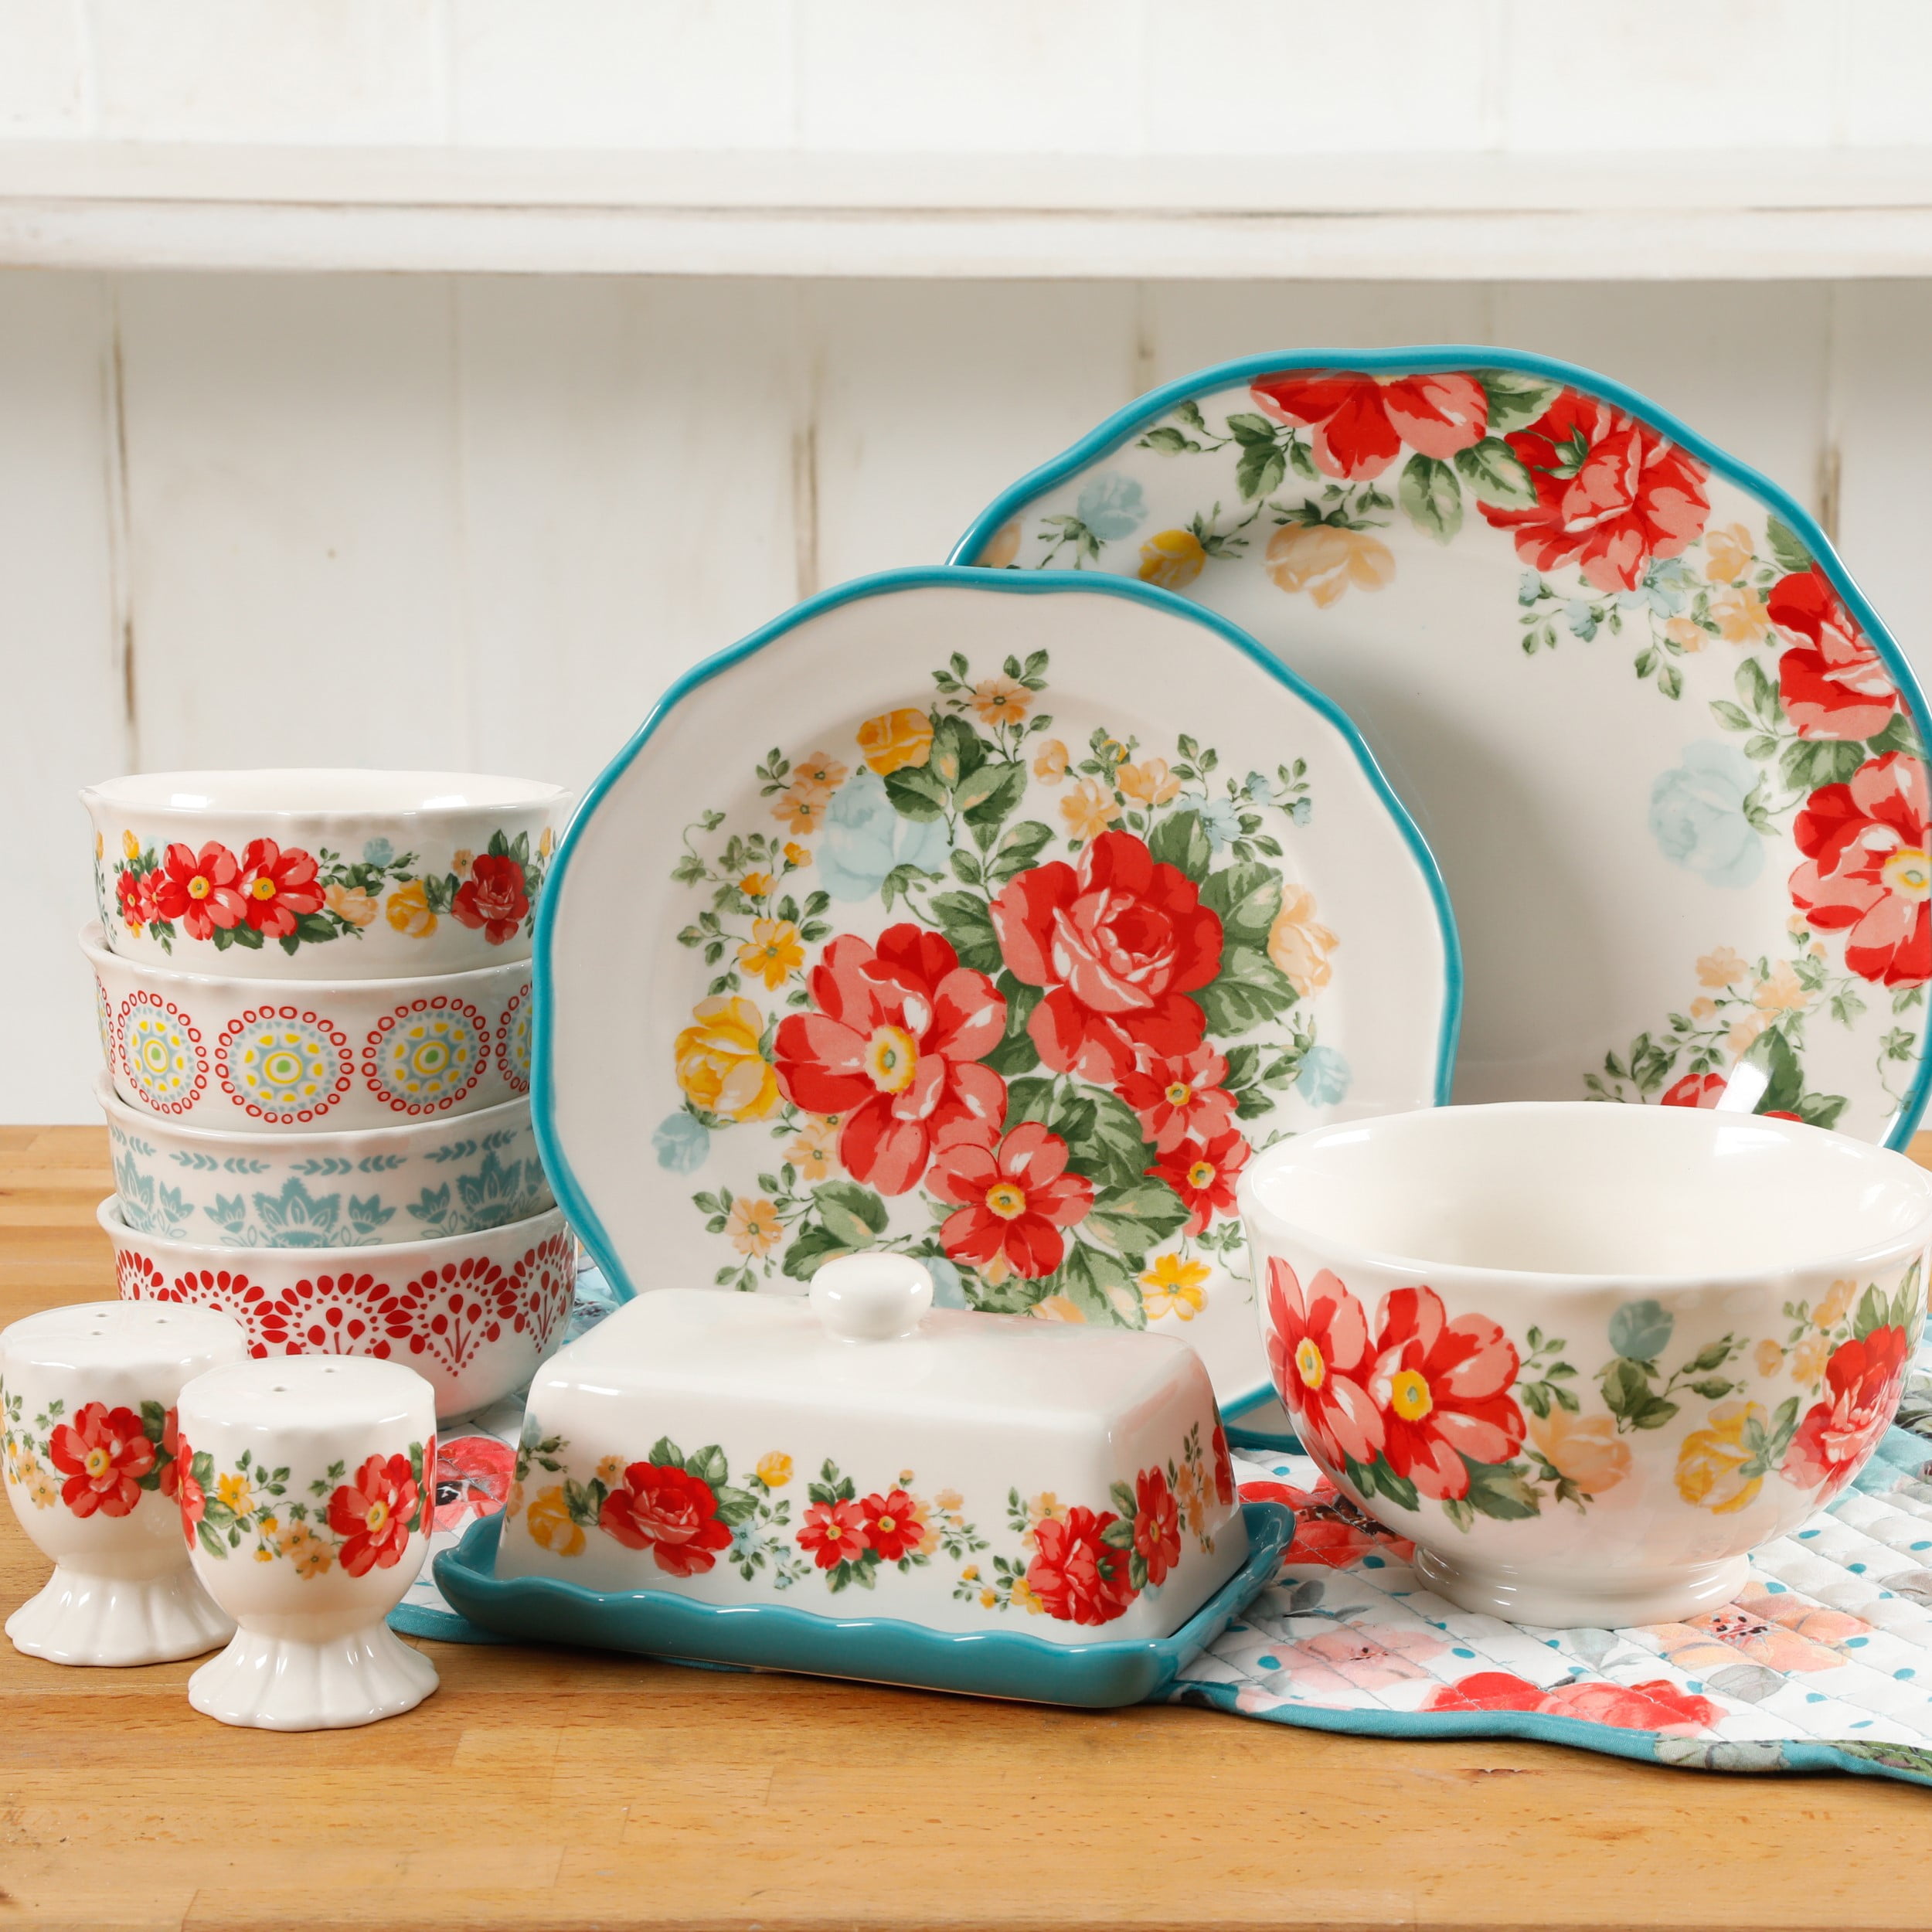 Pioneer Woman Vintage Floral Bowls set of 3 